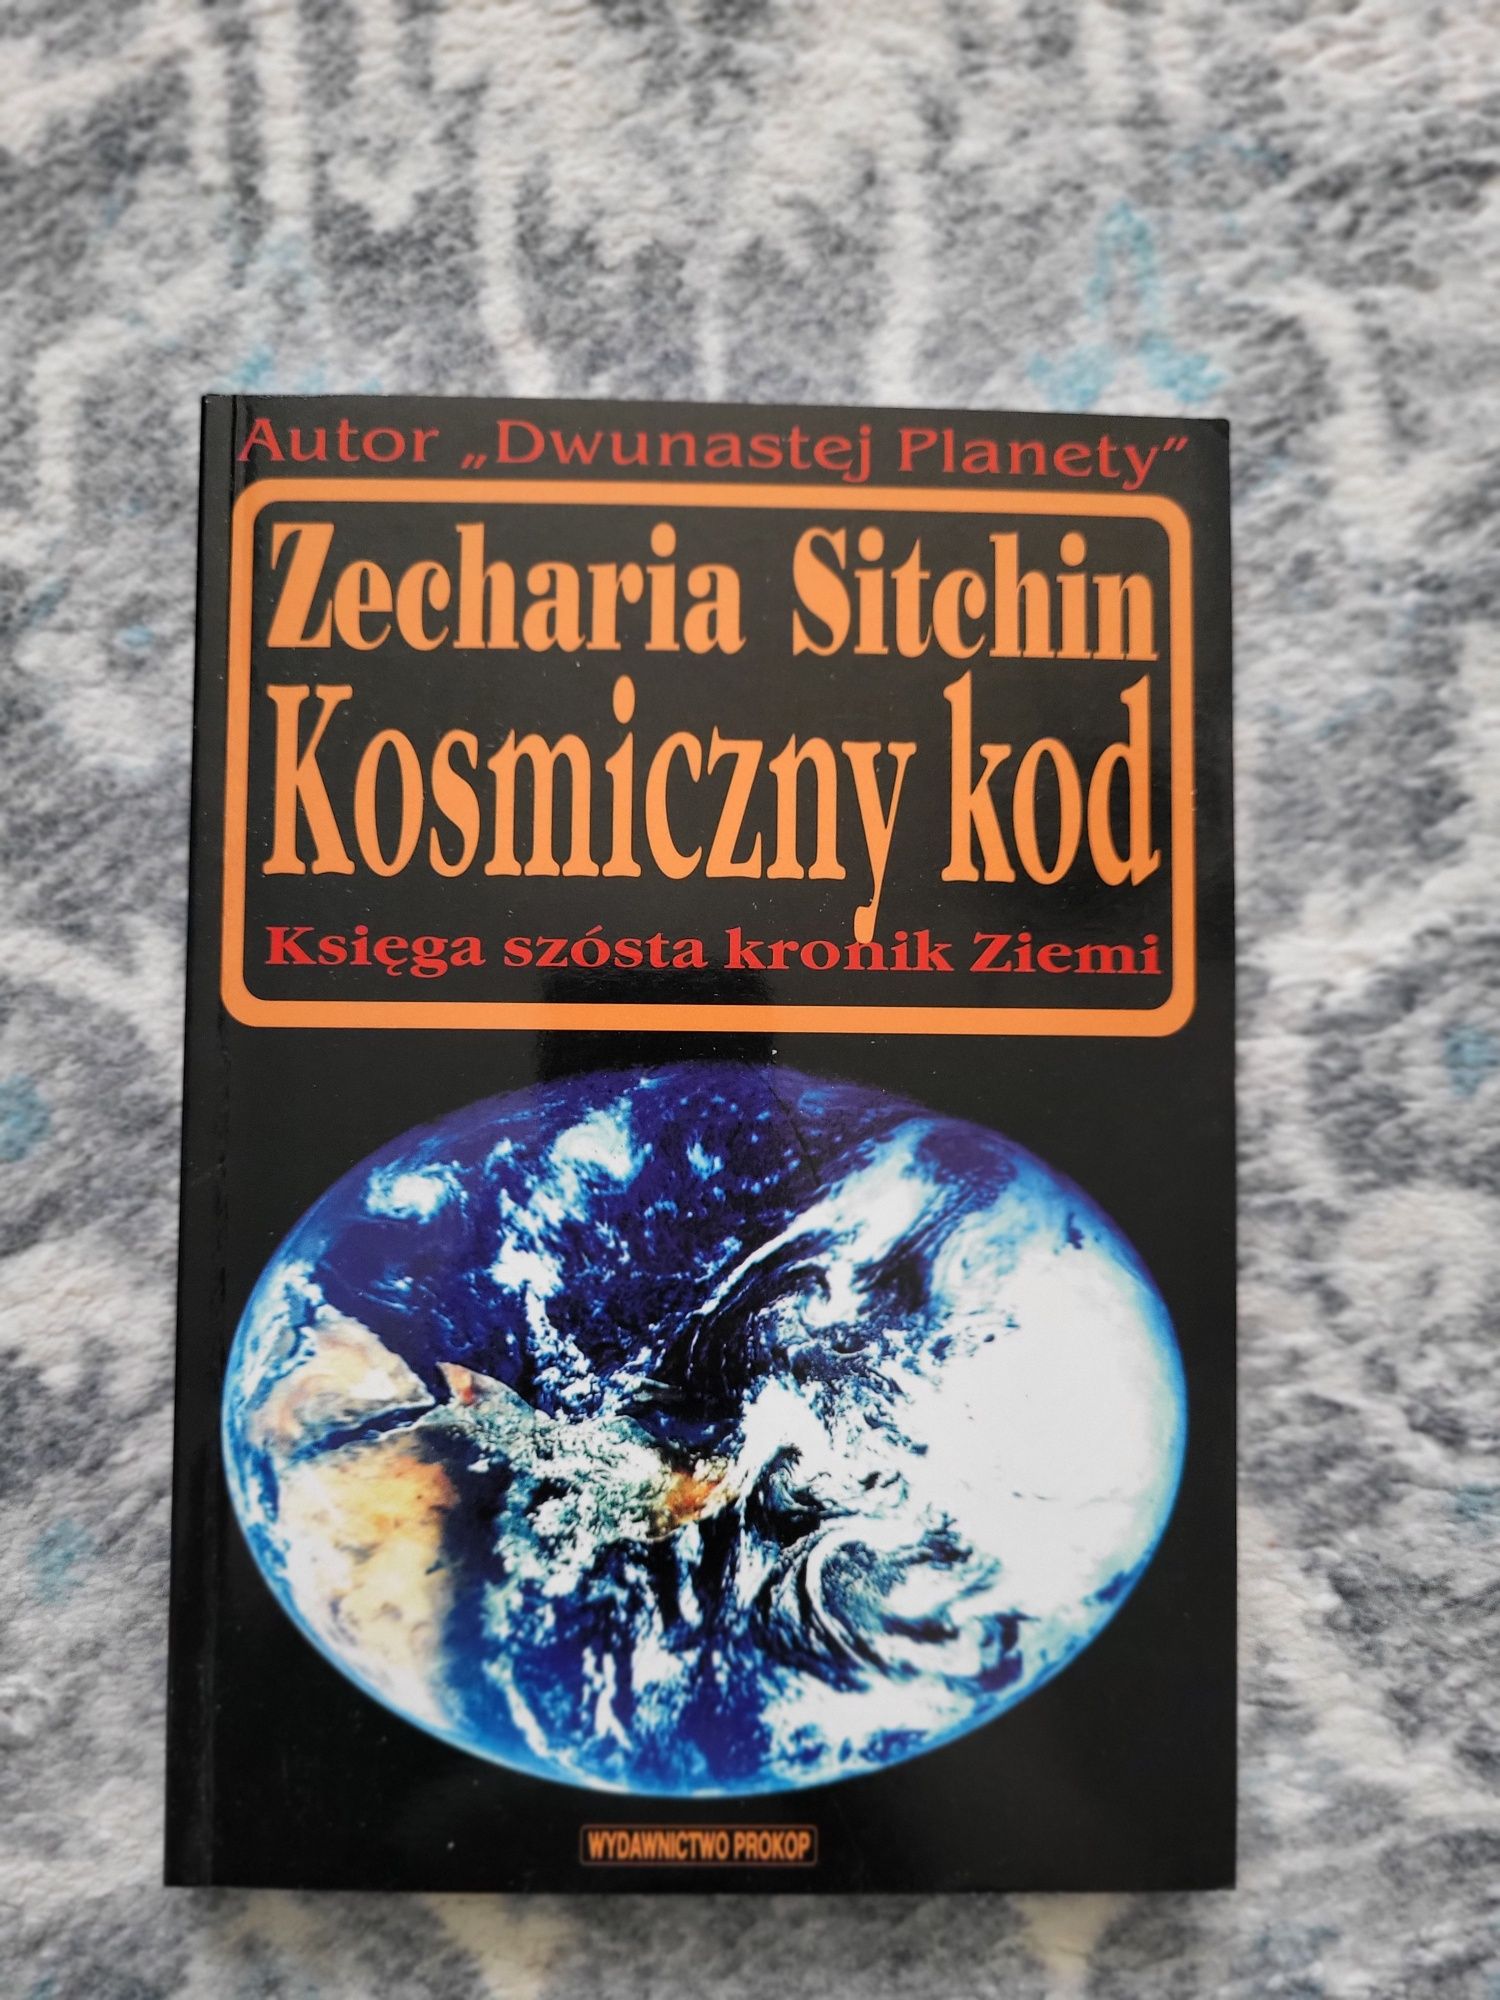 Zecharia Sitchin Kosmiczny kod. Księga szósta kronik Ziemi.